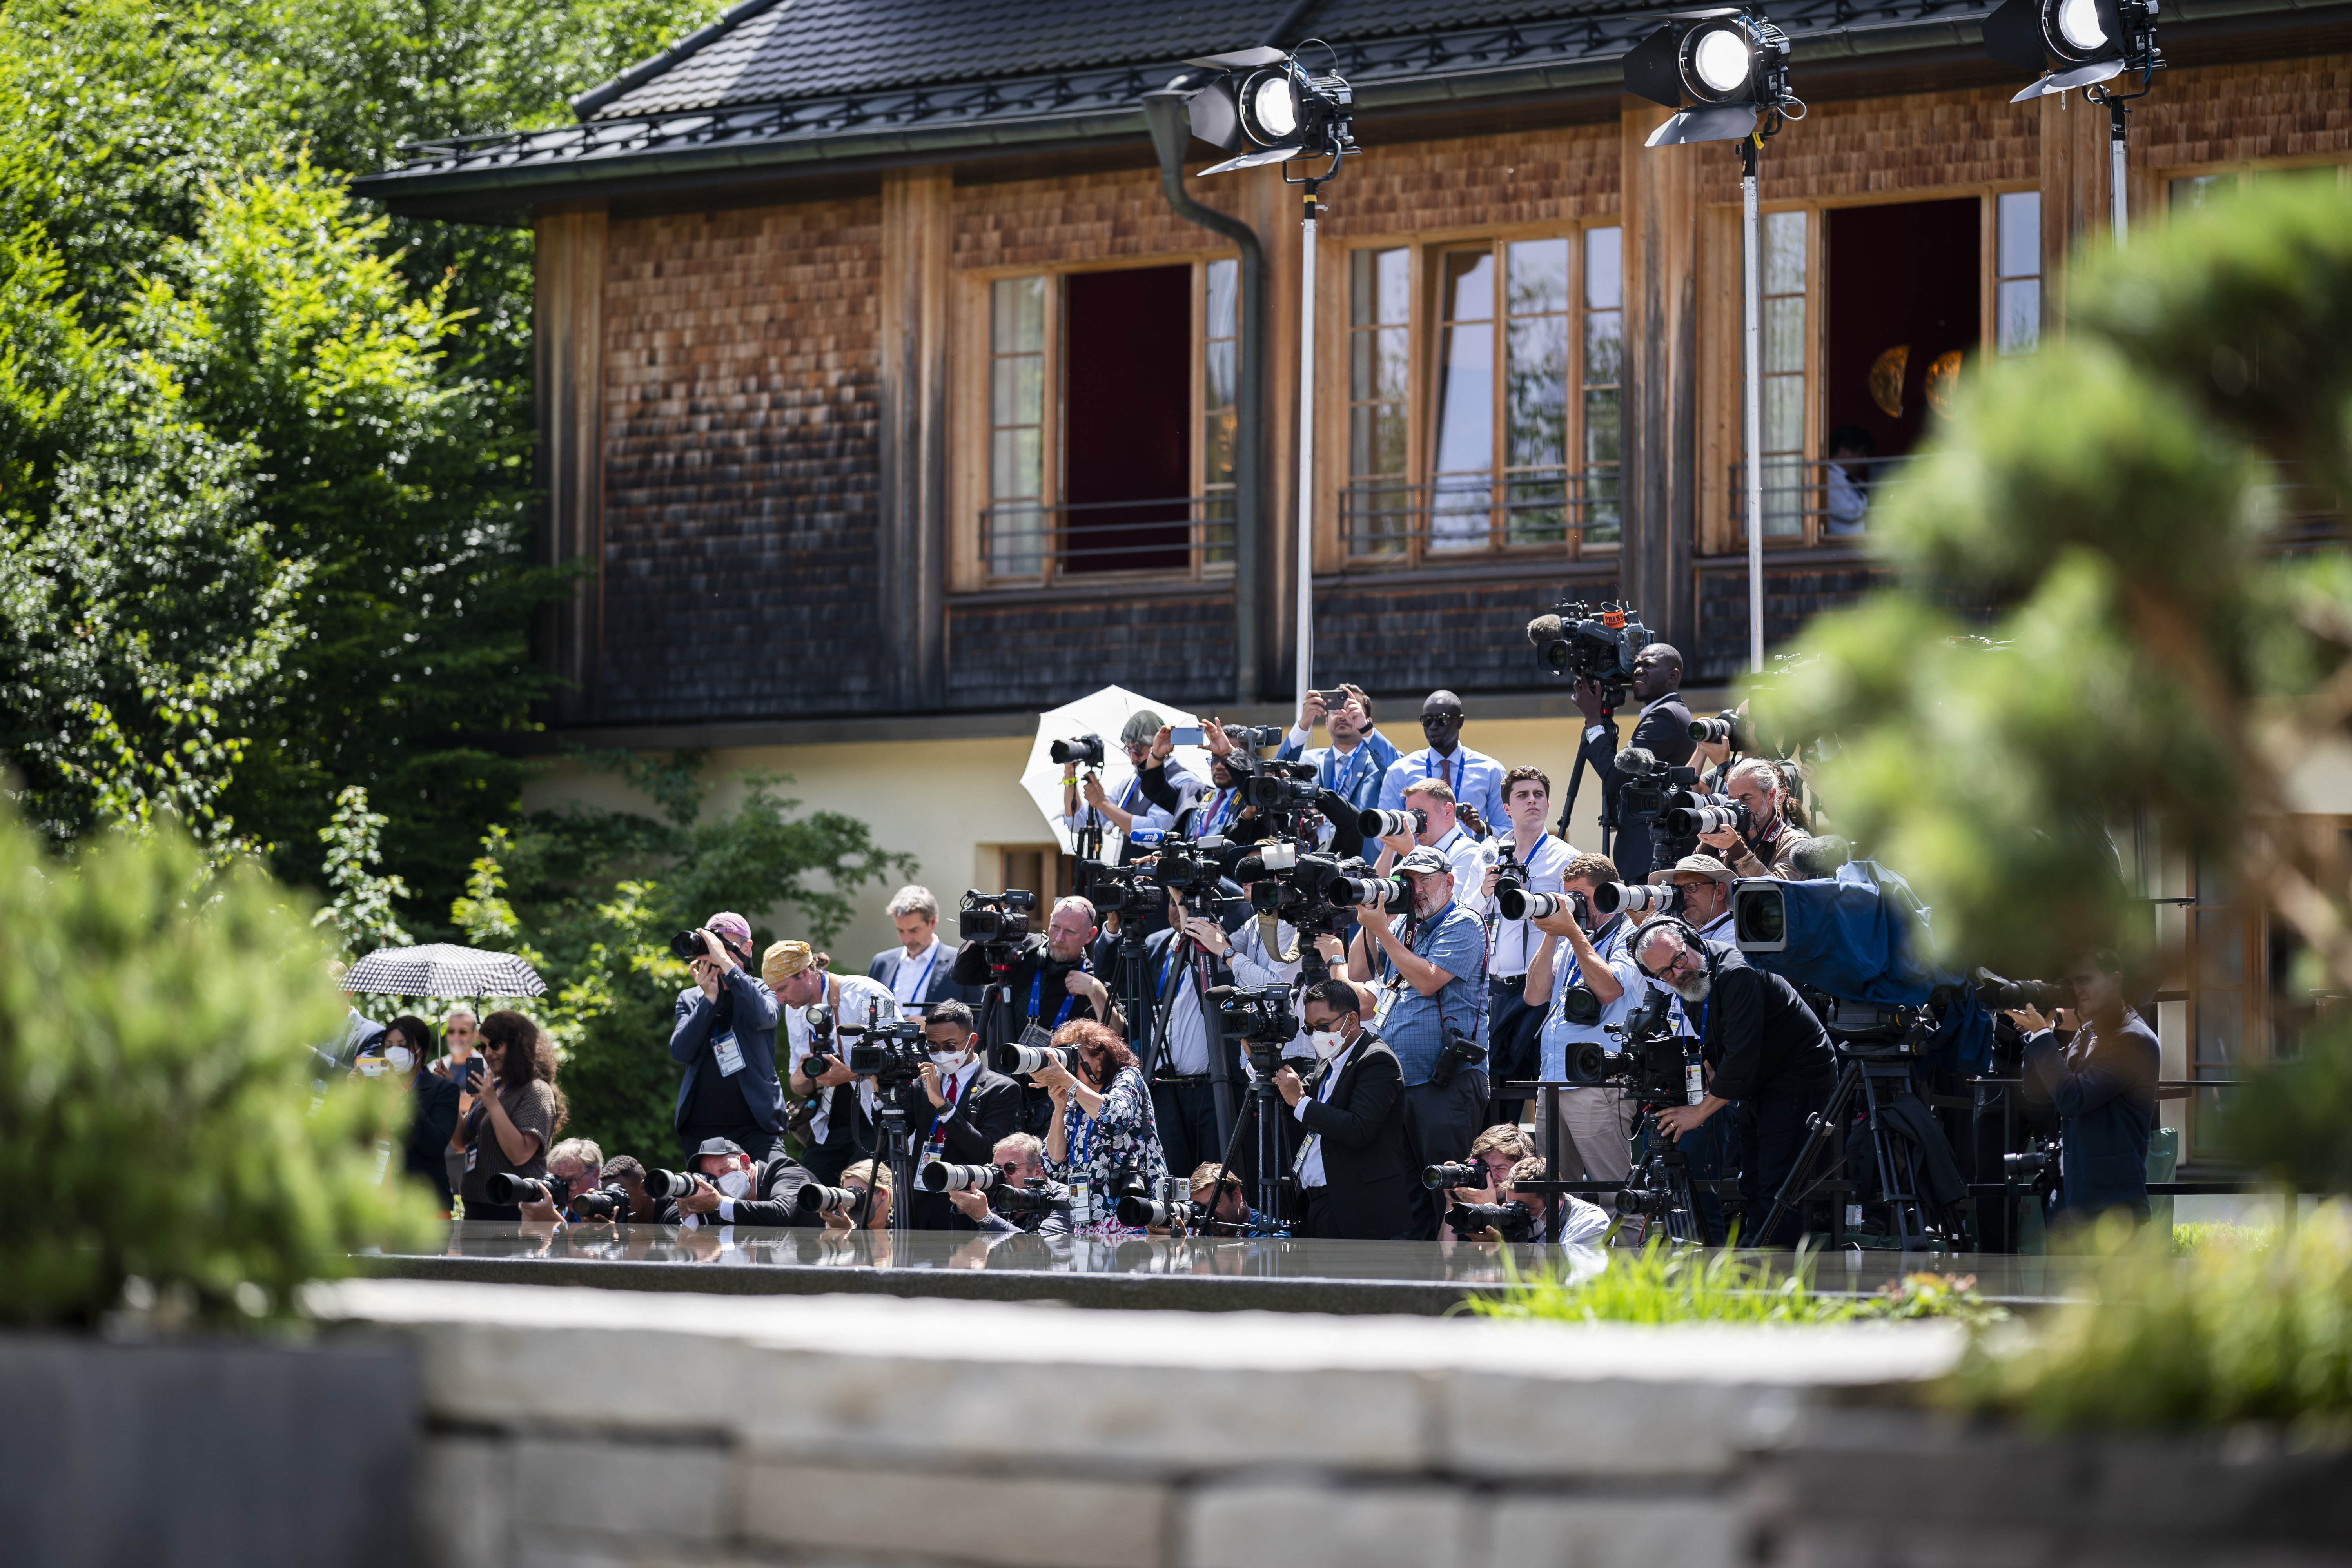 International media representatives at the G7 summit in Schloss Elmau.